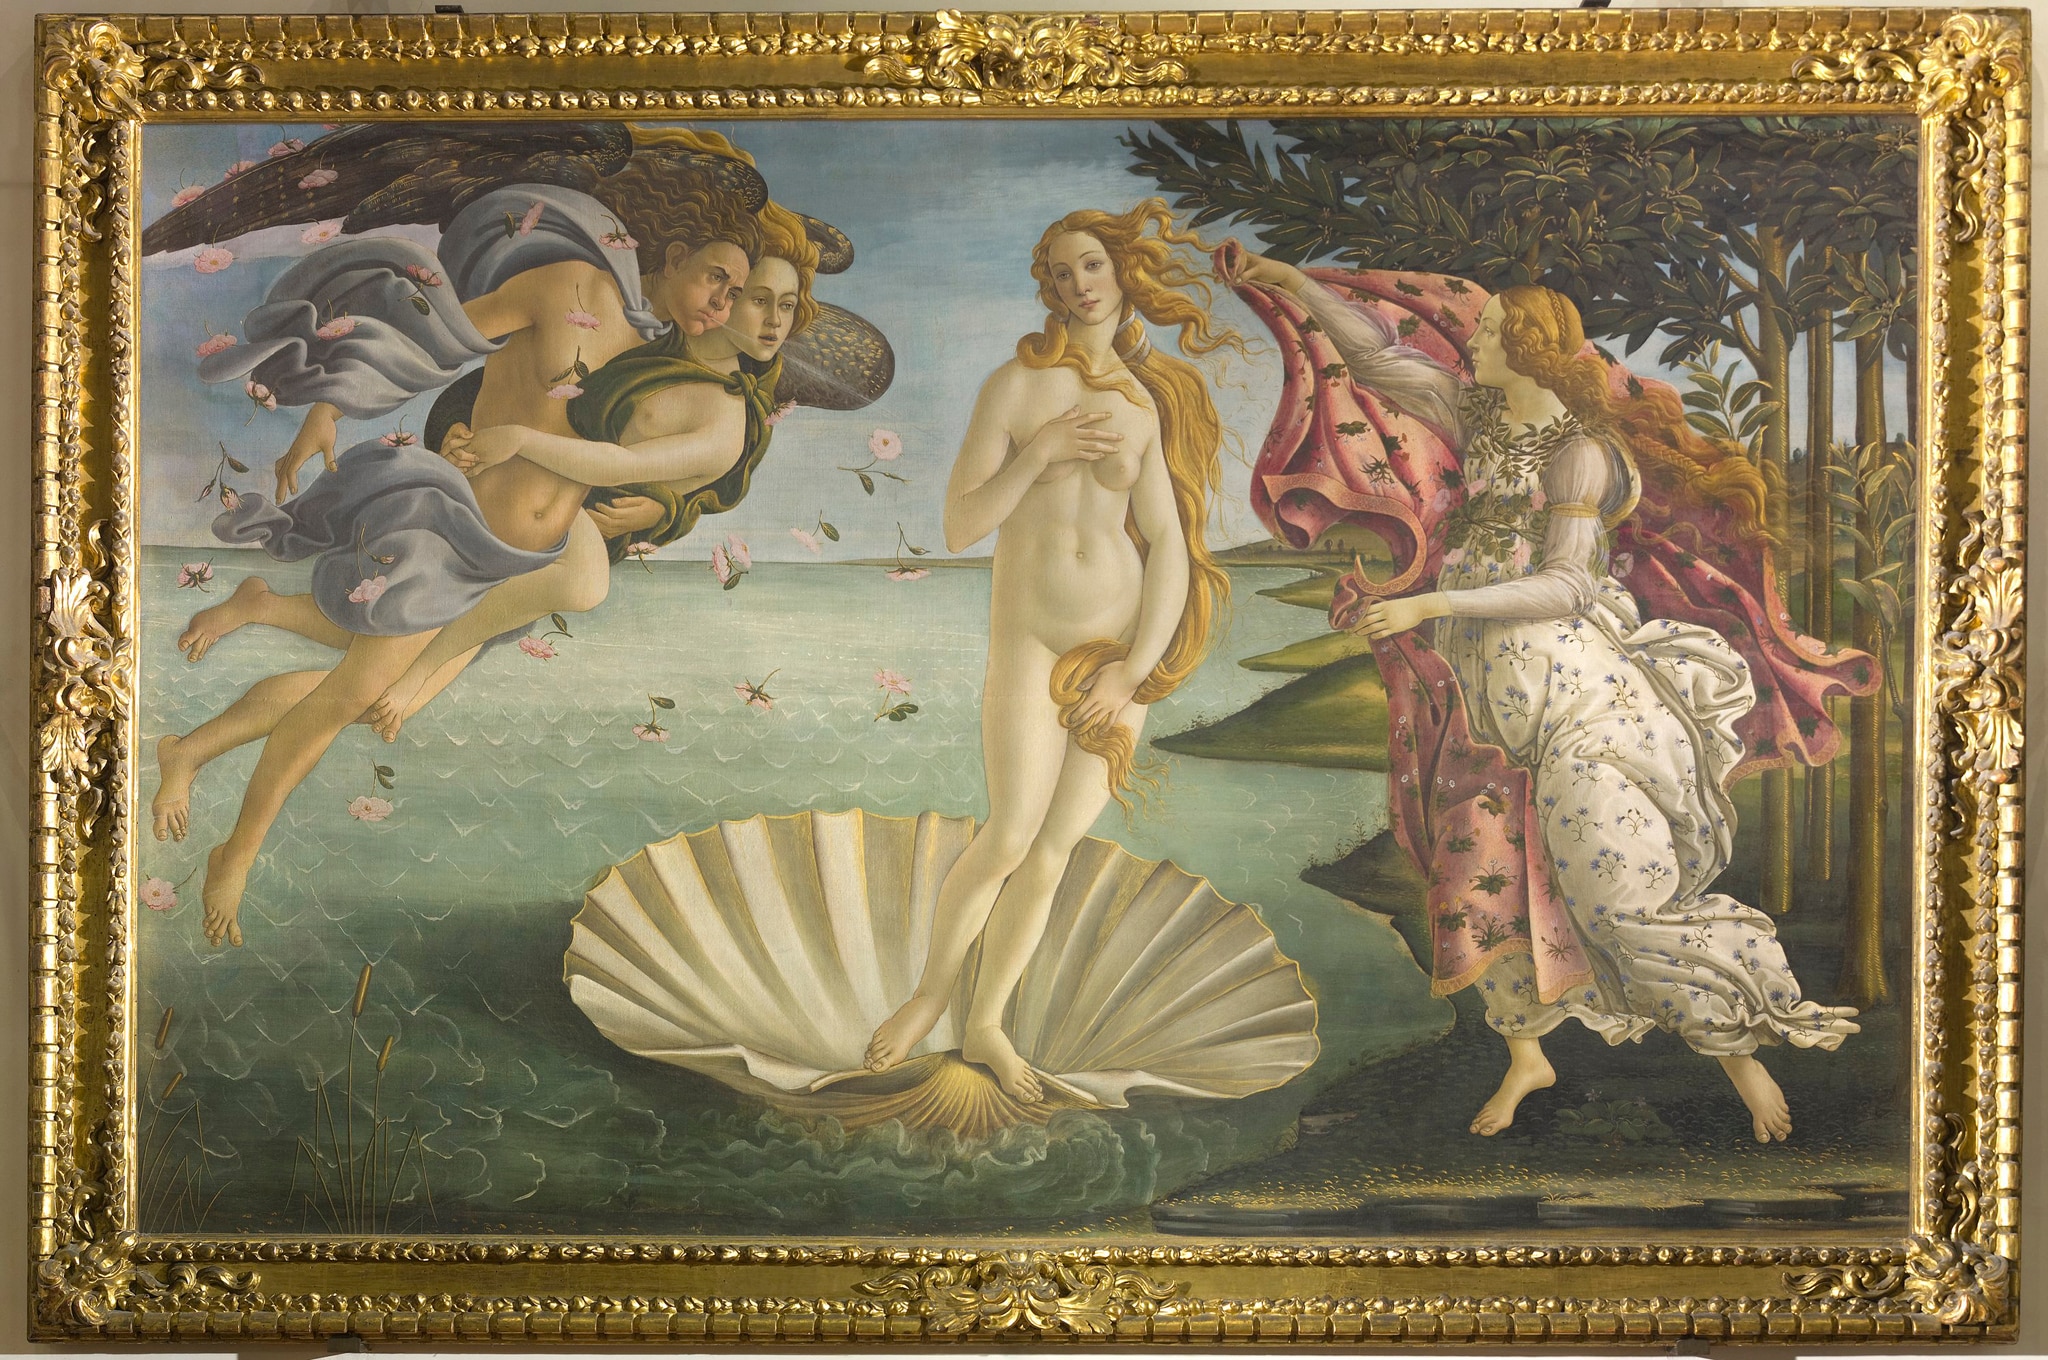 Sandro Botticelli, Nascita di Venere, 1485 ca., tempera su tela, 172,5x278,5cm. La composizione raffigura l’approdo sull’isola di Cipro della dea dell’amore e della bellezza, nata dalla spuma del mare e sospinta dai venti Zefiro e Aura. L’atteggiamento pudico di Venere deriva dalla statuaria classica, mentre la coppia dei Venti che volano abbracciati, è una citazione da un’opera ellenistica posseduta da Lorenzo il Magnifico.